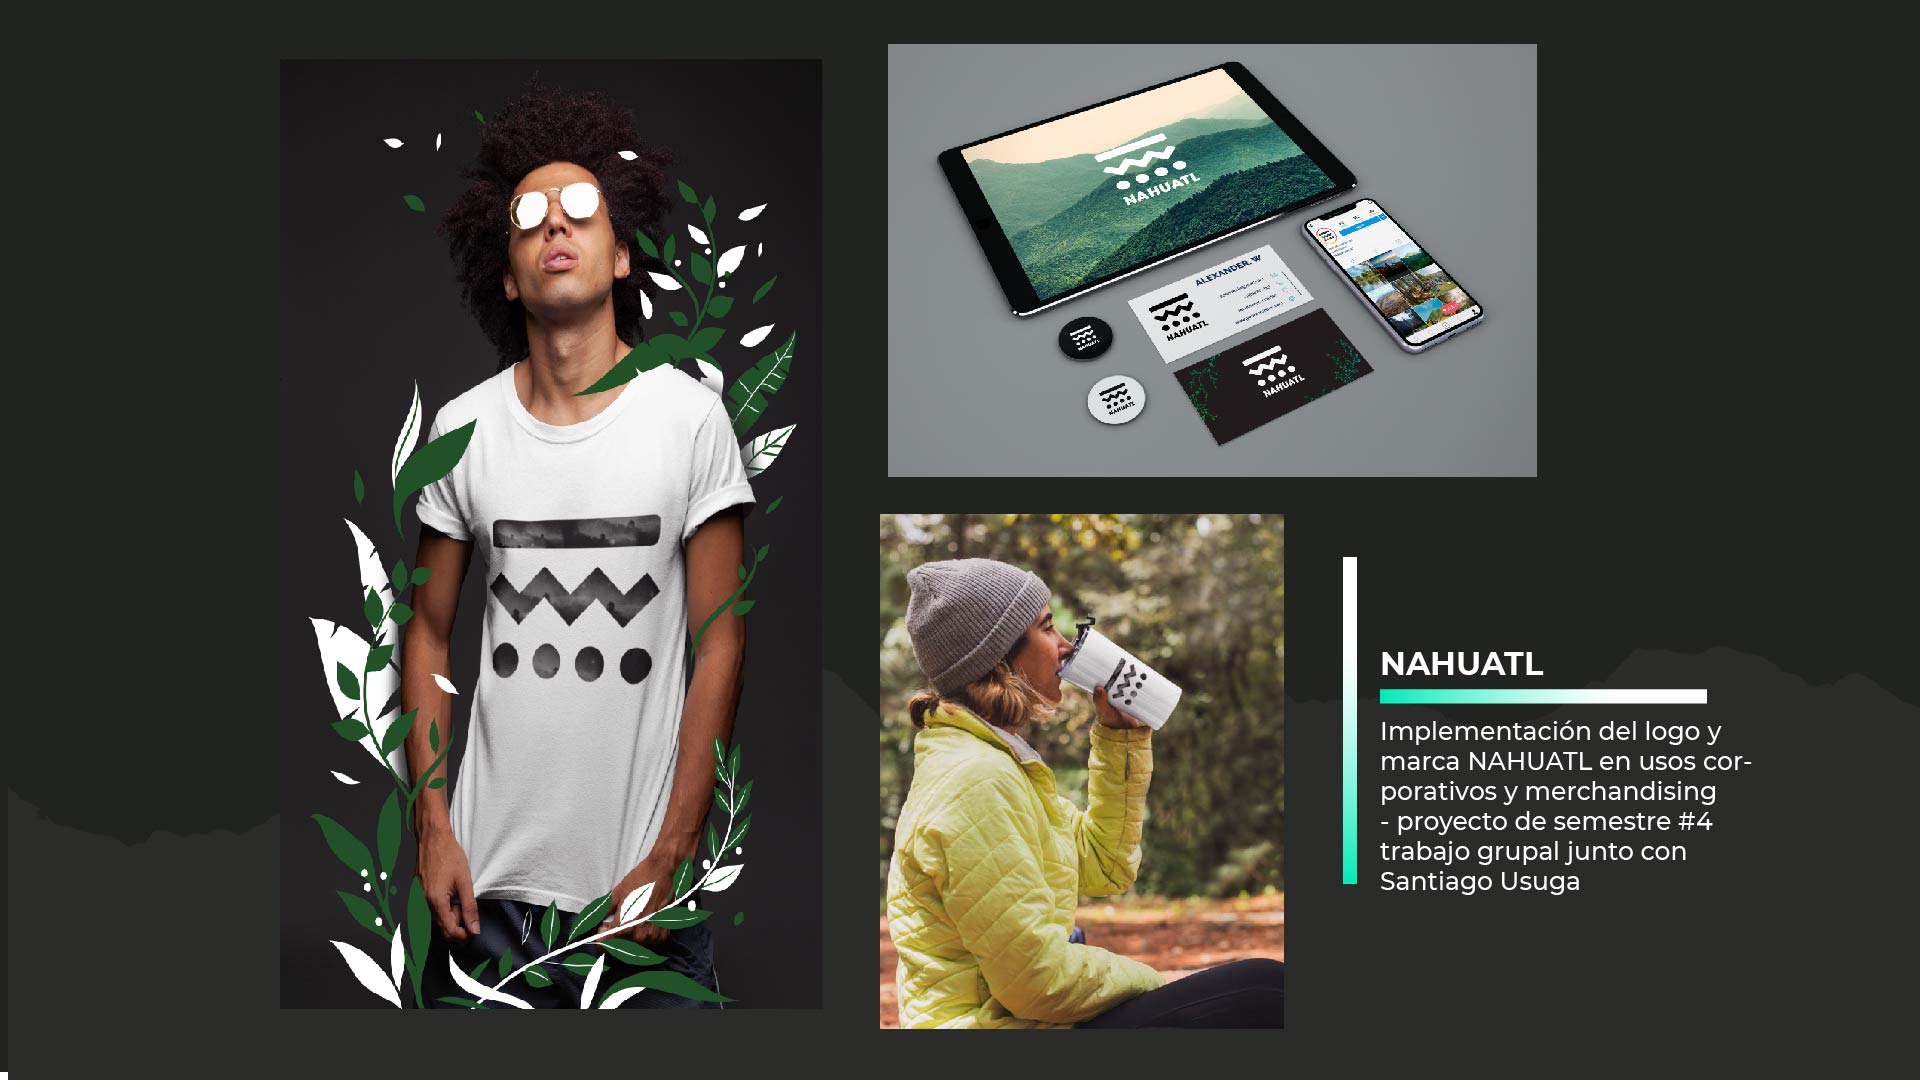 NAHUATL

CC —
Implementacion del logo y
marca NAHUATL en usos cor-
porativos y merchandising

- proyecto de semestre #4
trabajo grupal junto con
Santiago Usuga